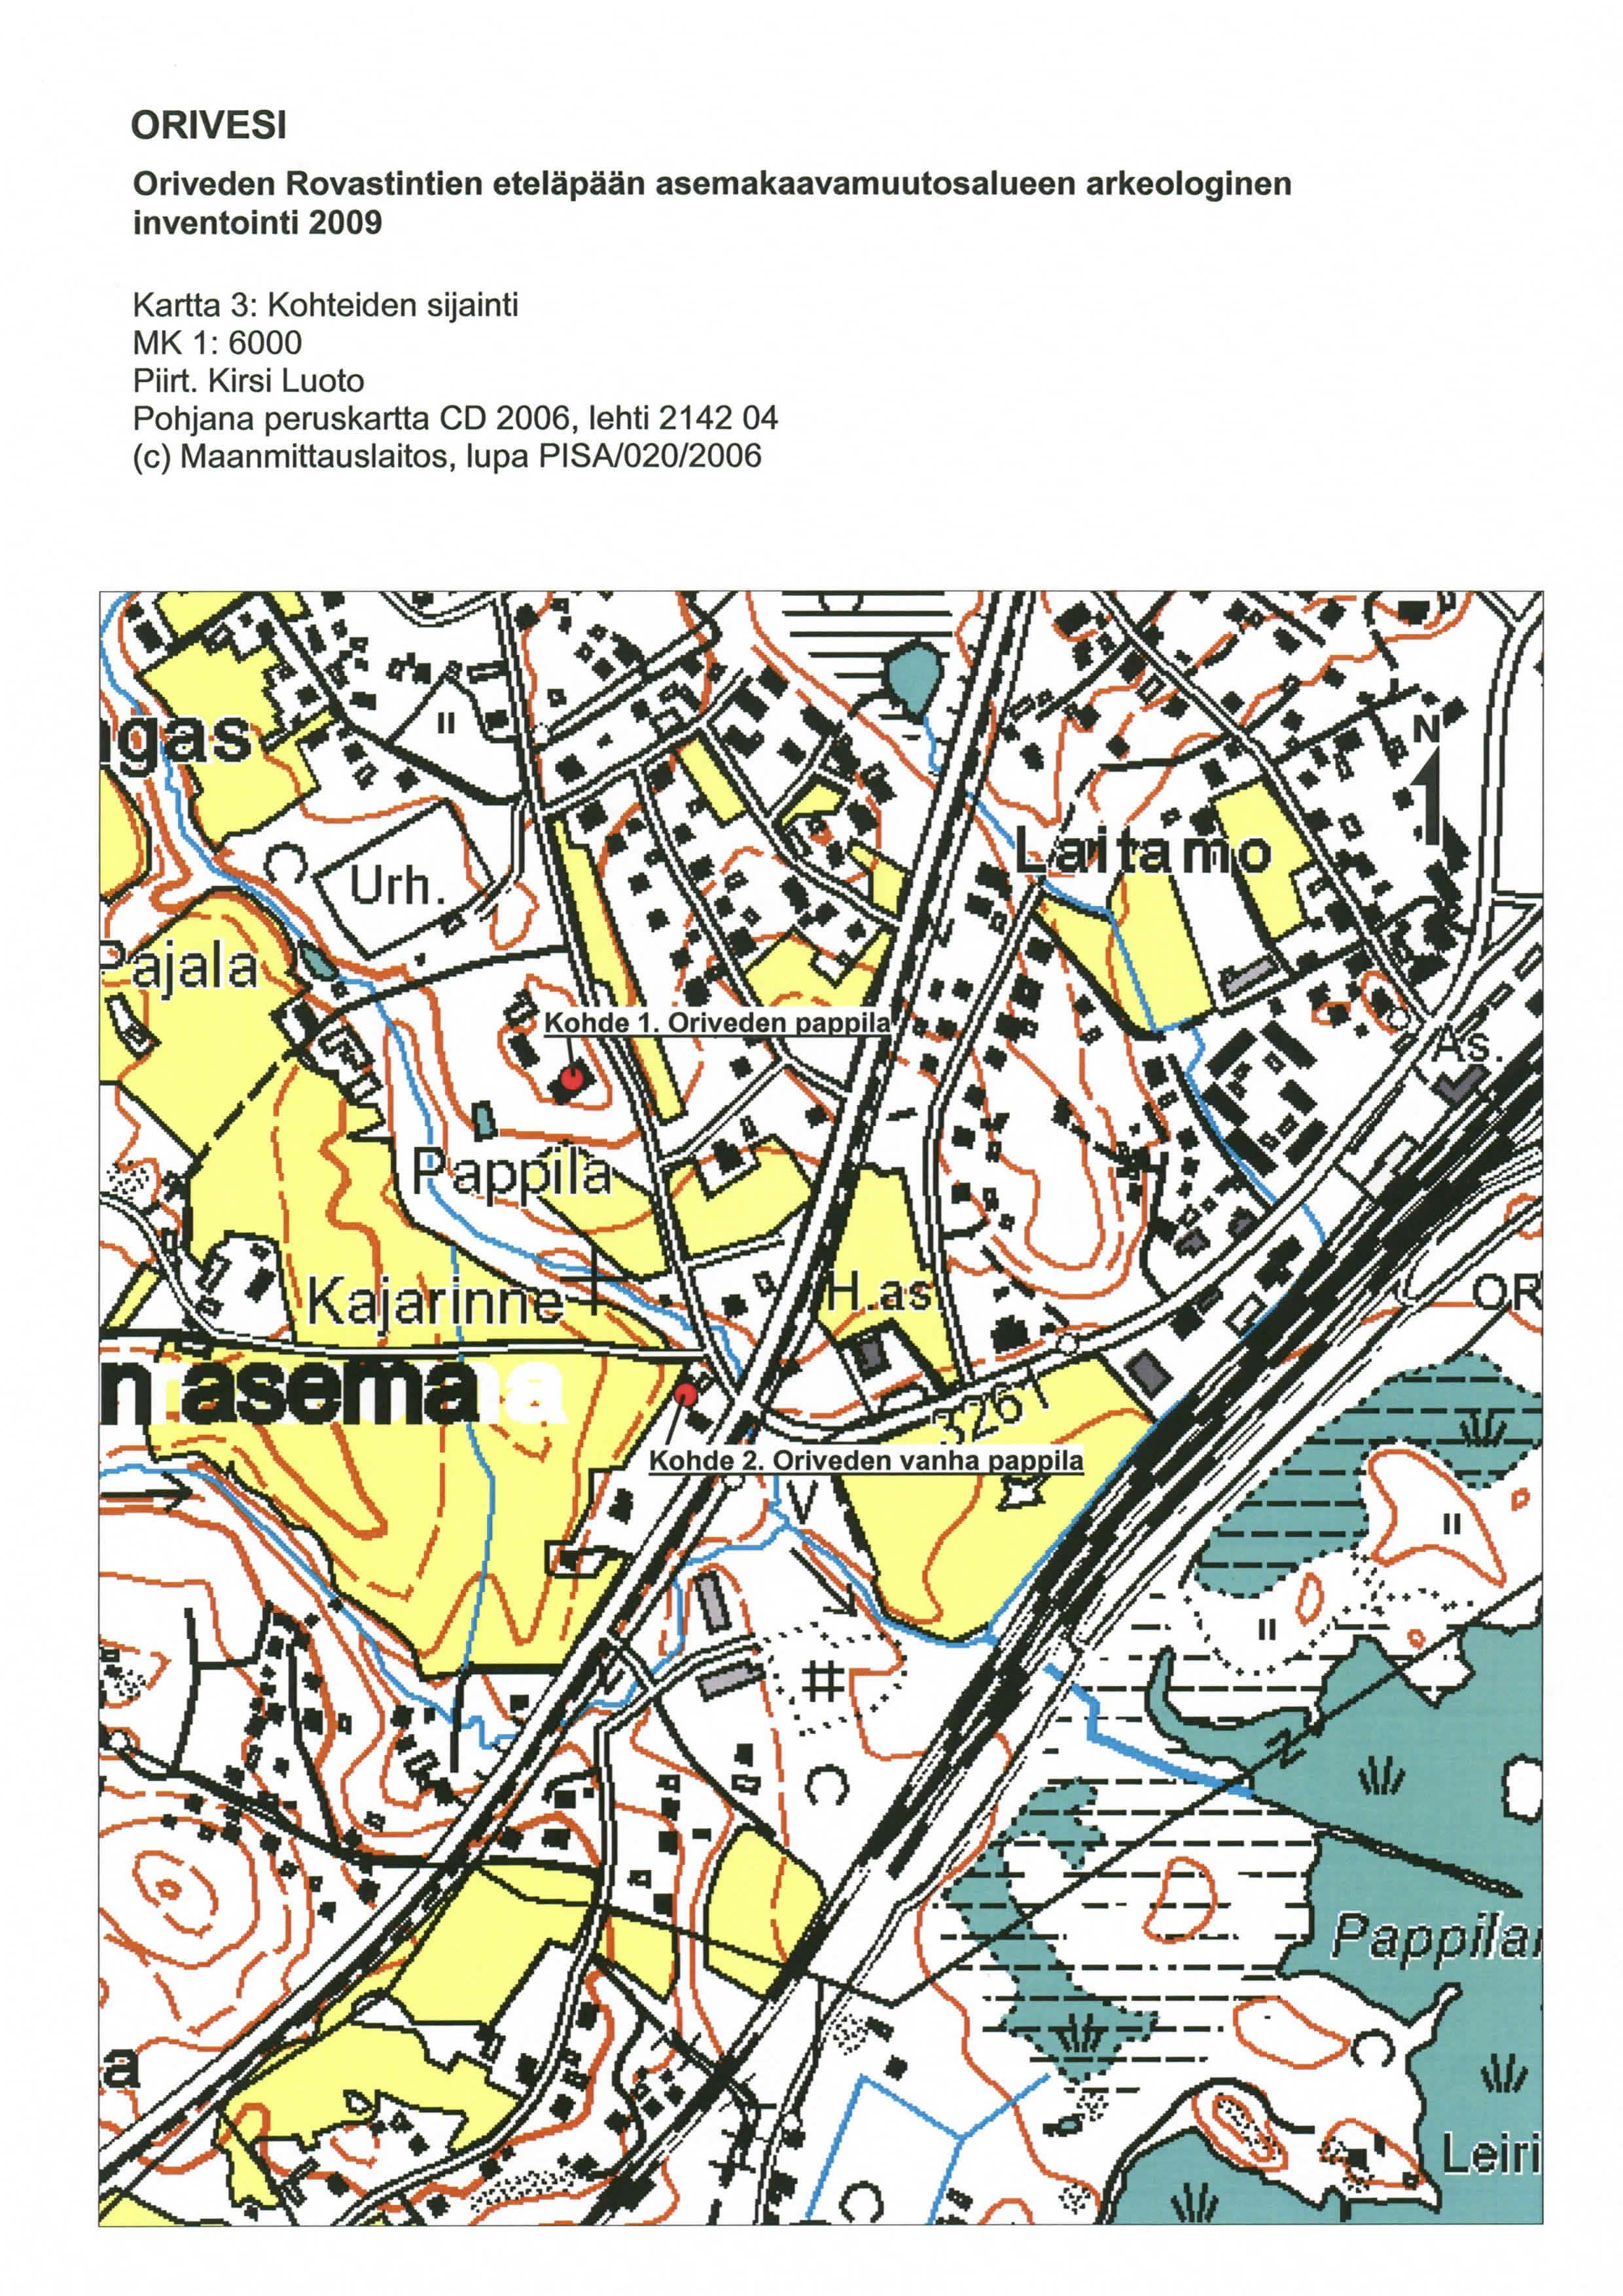 ORIVESI Oriveden Rovastintien eteläpään asemakaavamuutosalueen arkeologinen inventointi 2009 Kartta 3: Kohteiden